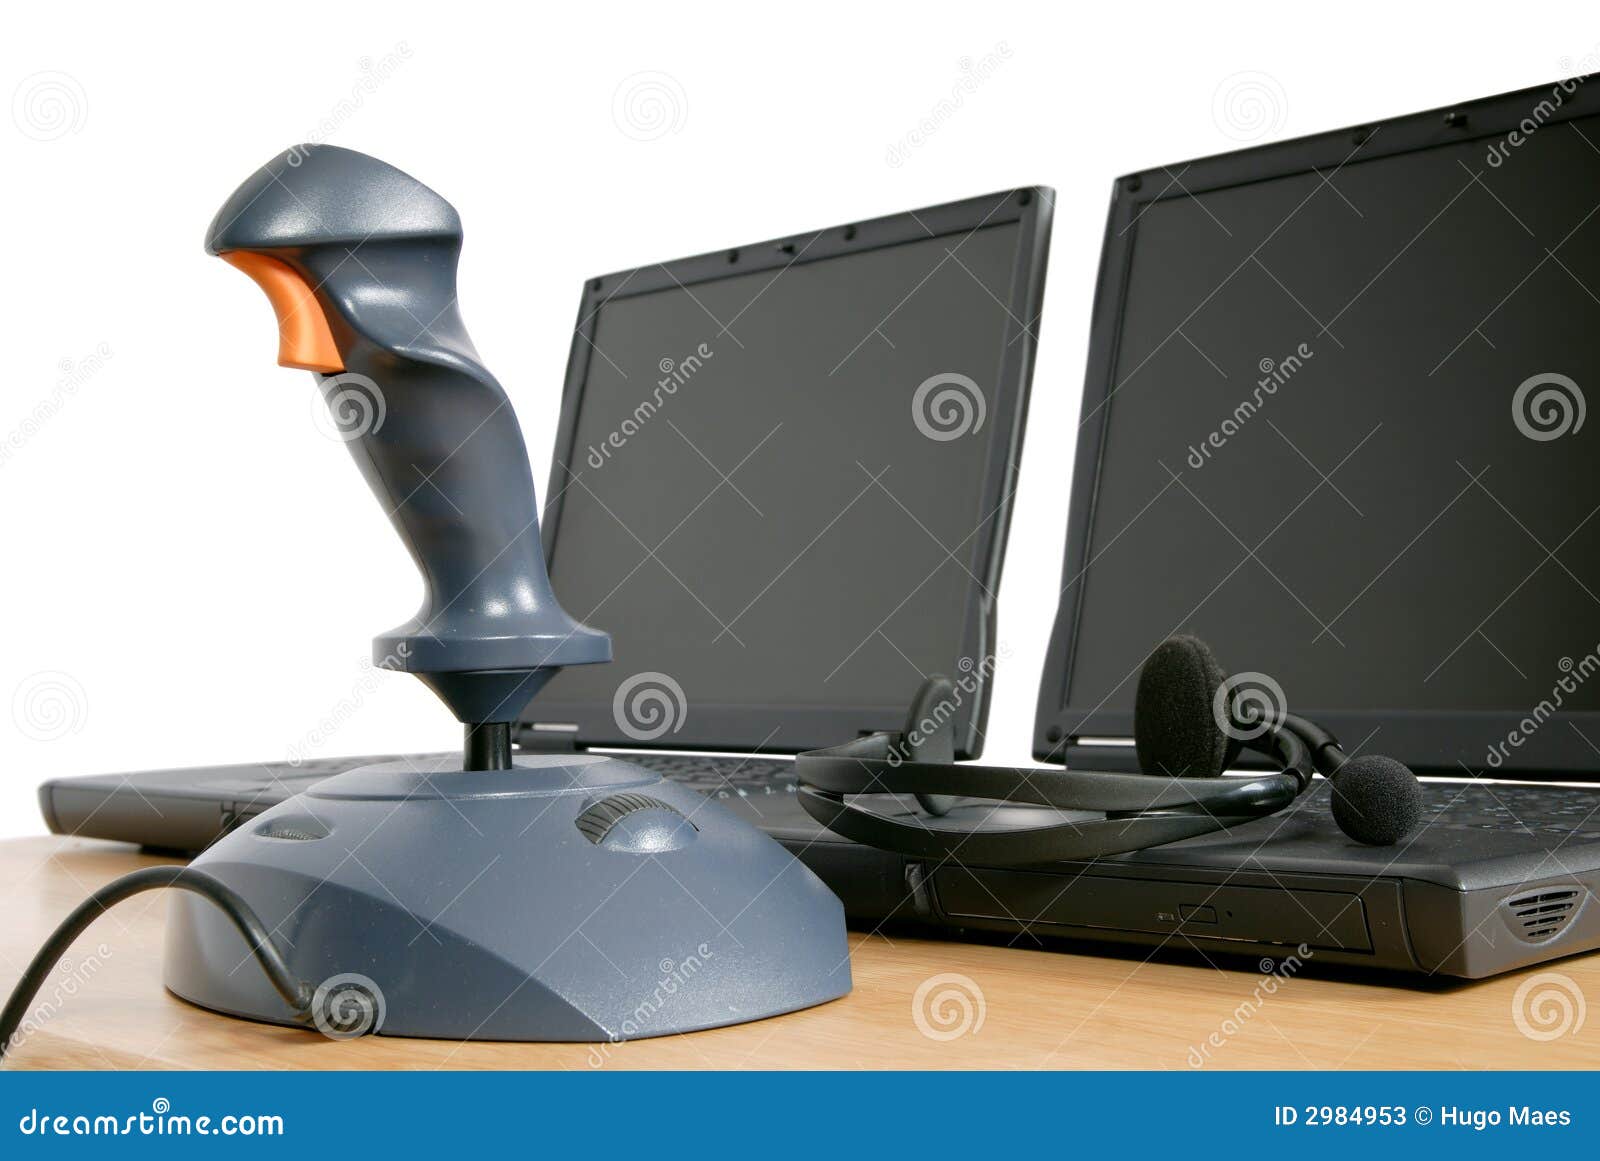 Steuerknüppel mit Laptopen. Zwei Laptop PC und ein Steuerknüppel, grundlegender Gang einer Aufruf- oder Stützmitte oder Onlinegamers oder rattert netcafe. Getrennt über Weiß.